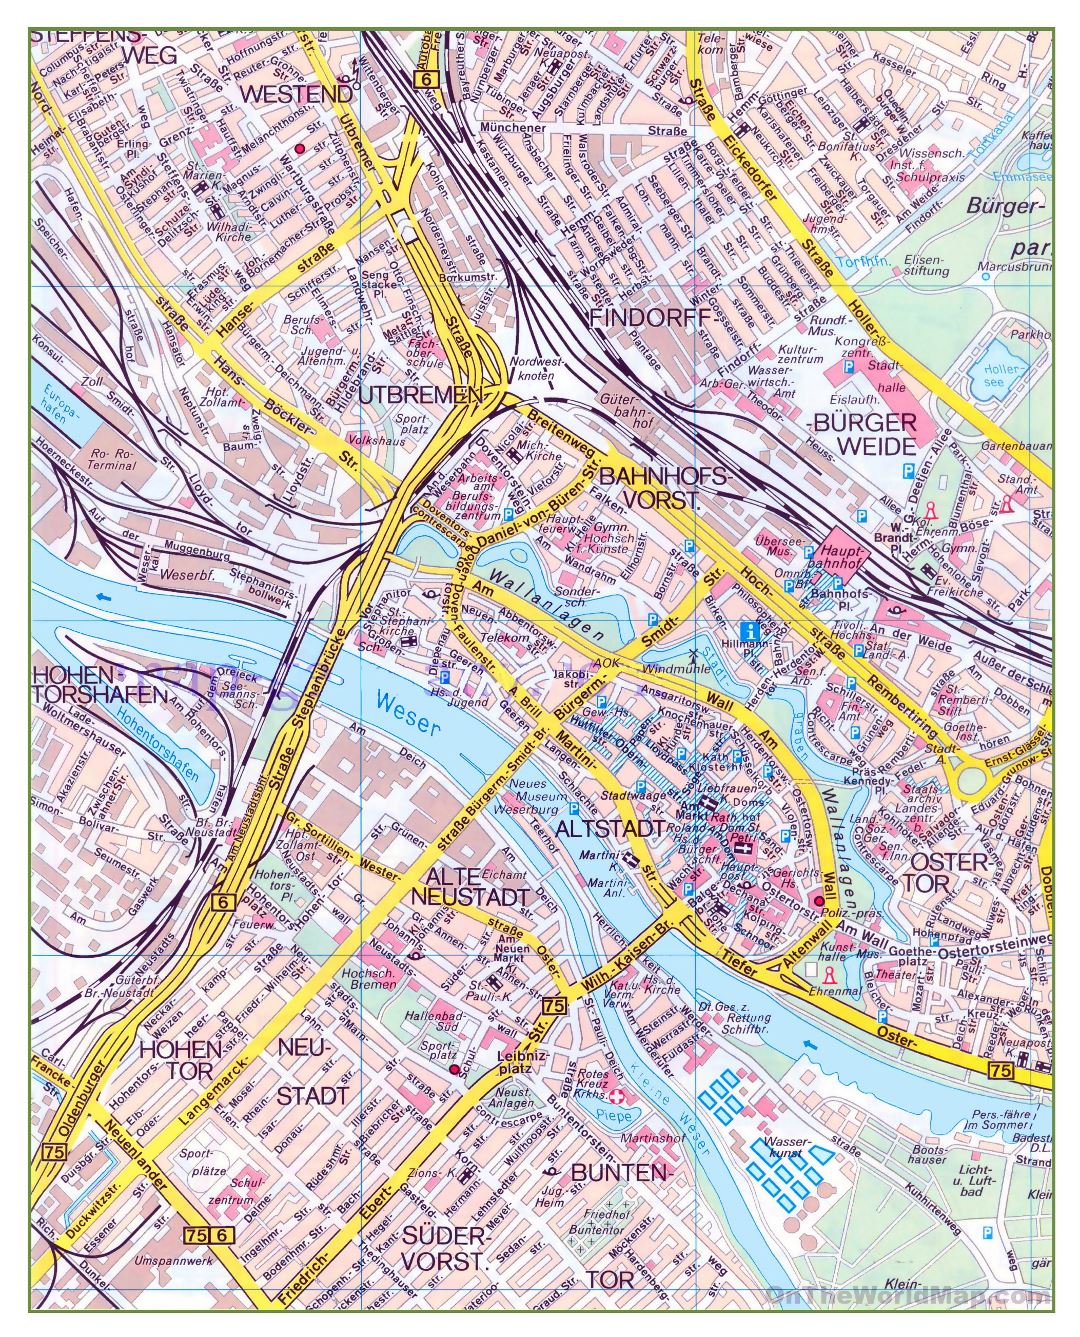 Gran mapa detallado de la parte central de la ciudad de Bremen